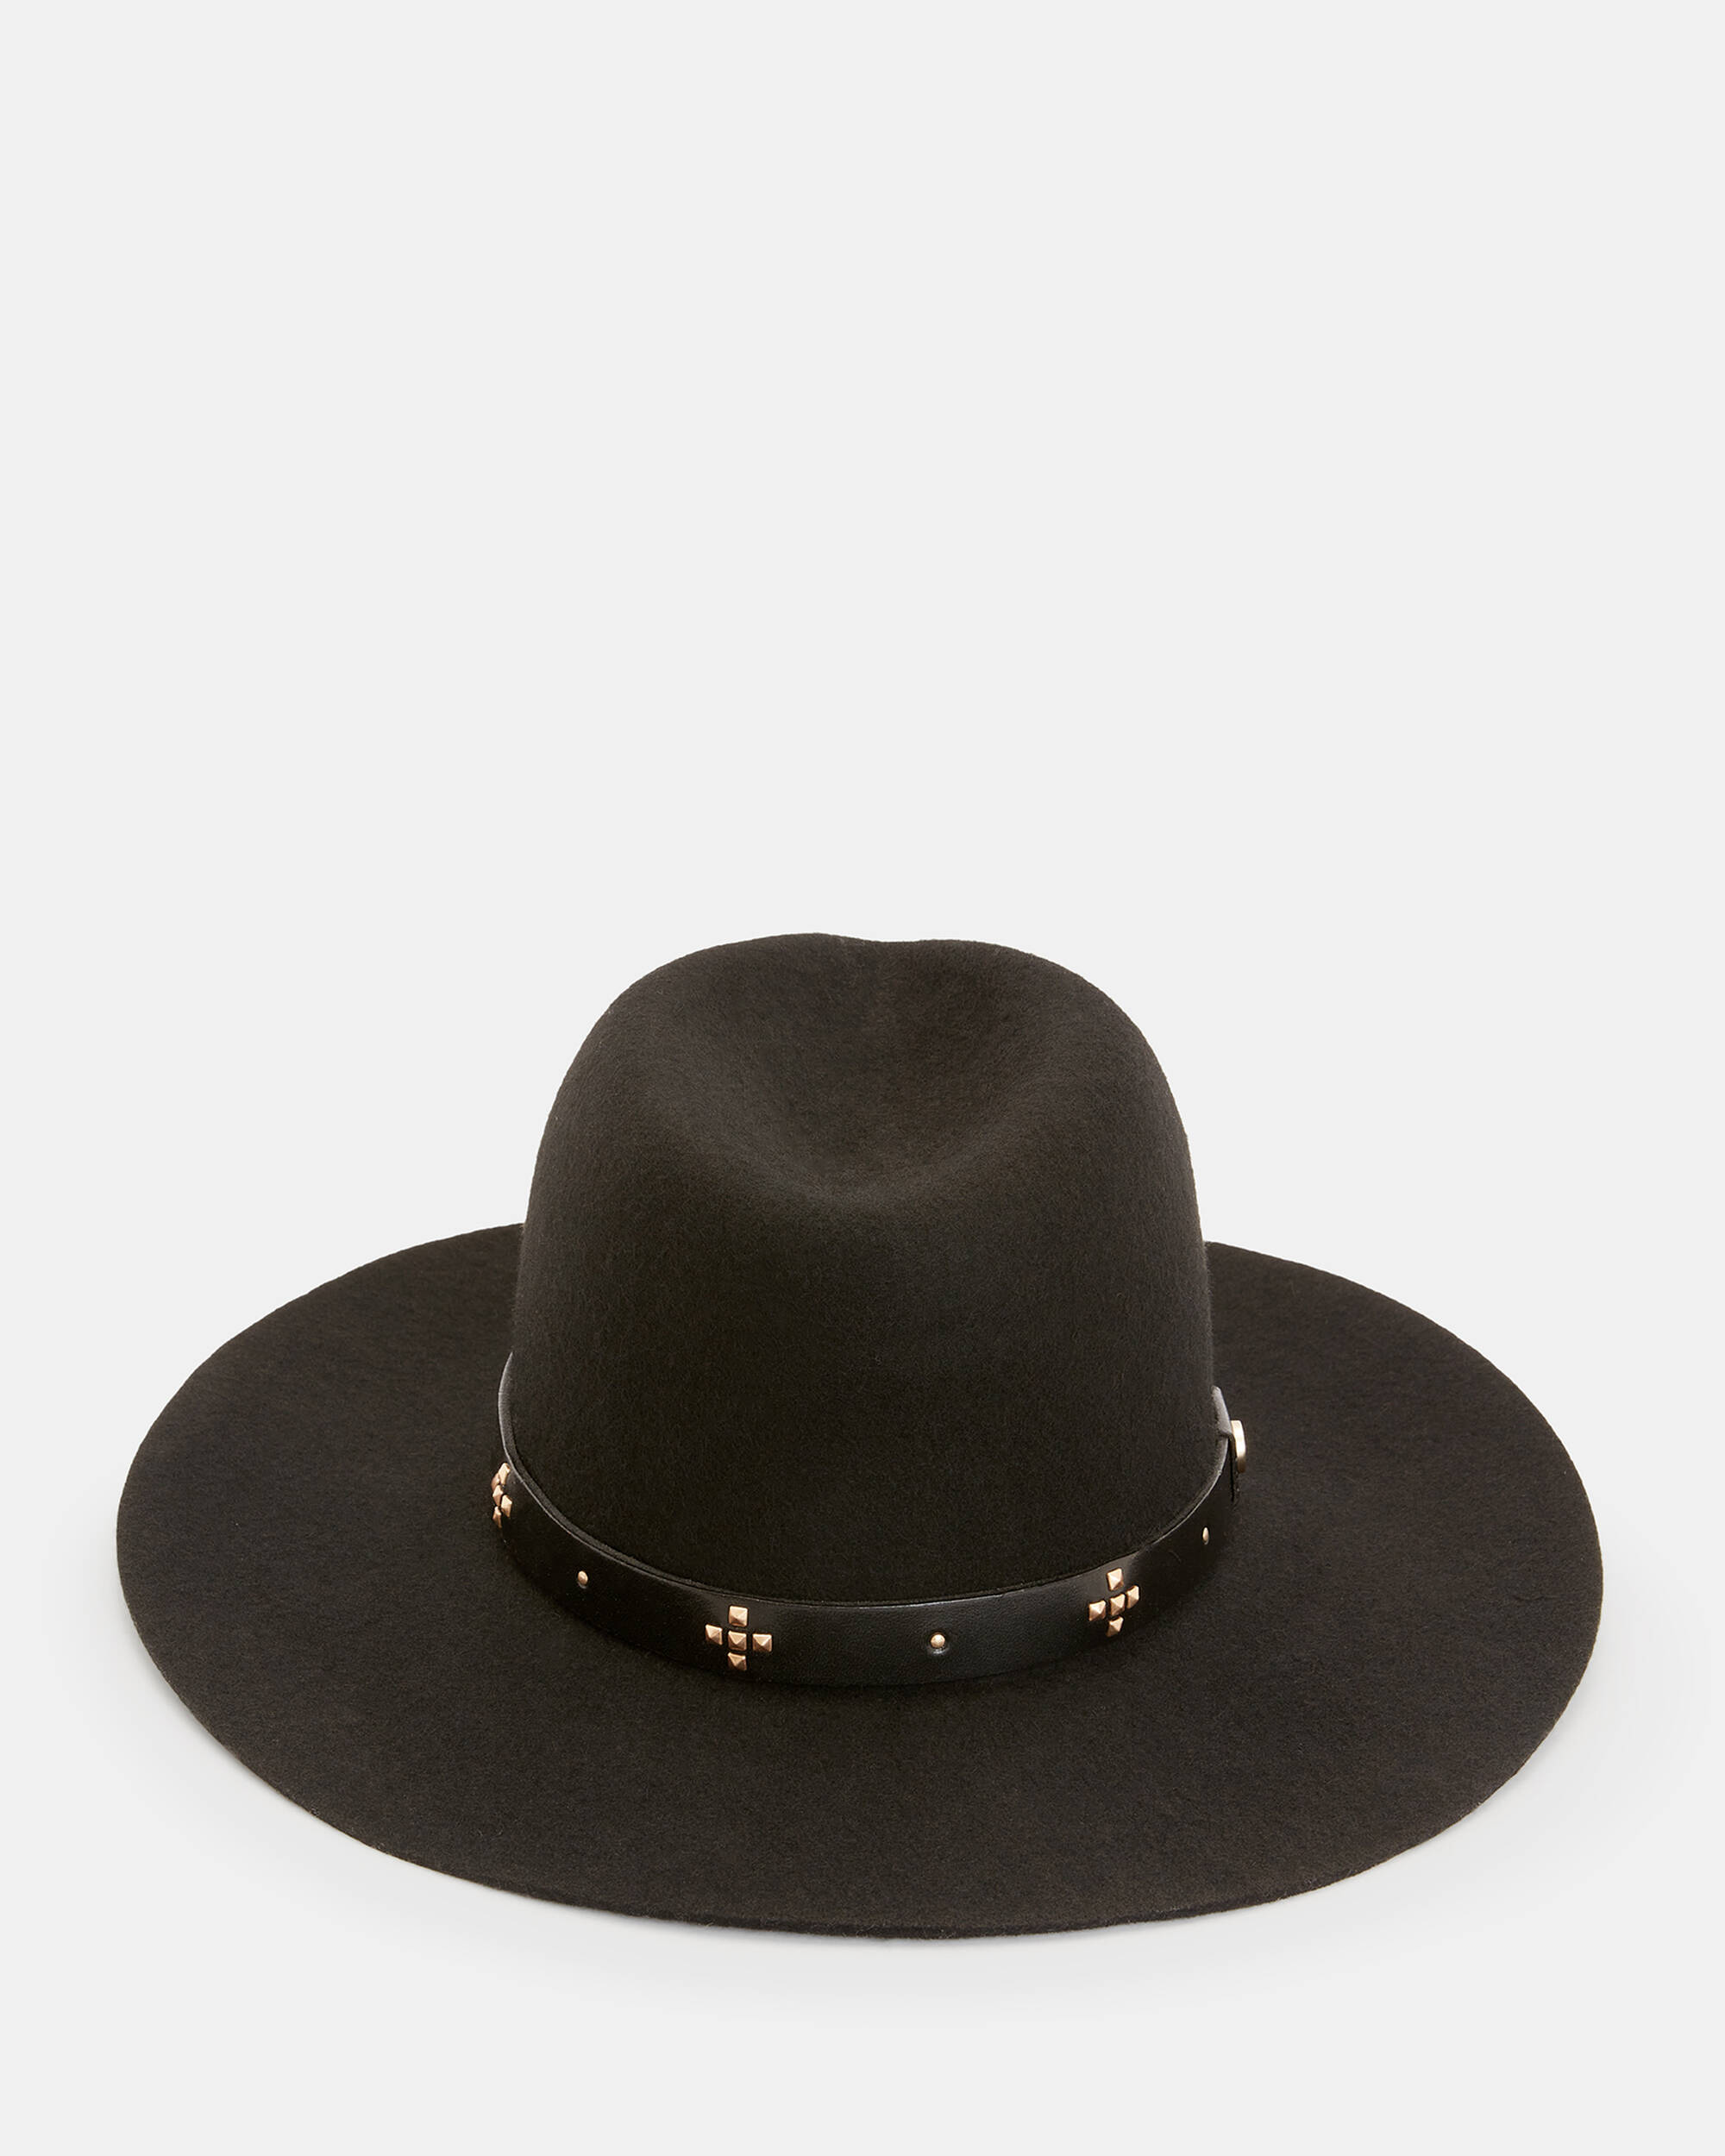 Nova Studded Leather Band Fedora Hat  large image number 1